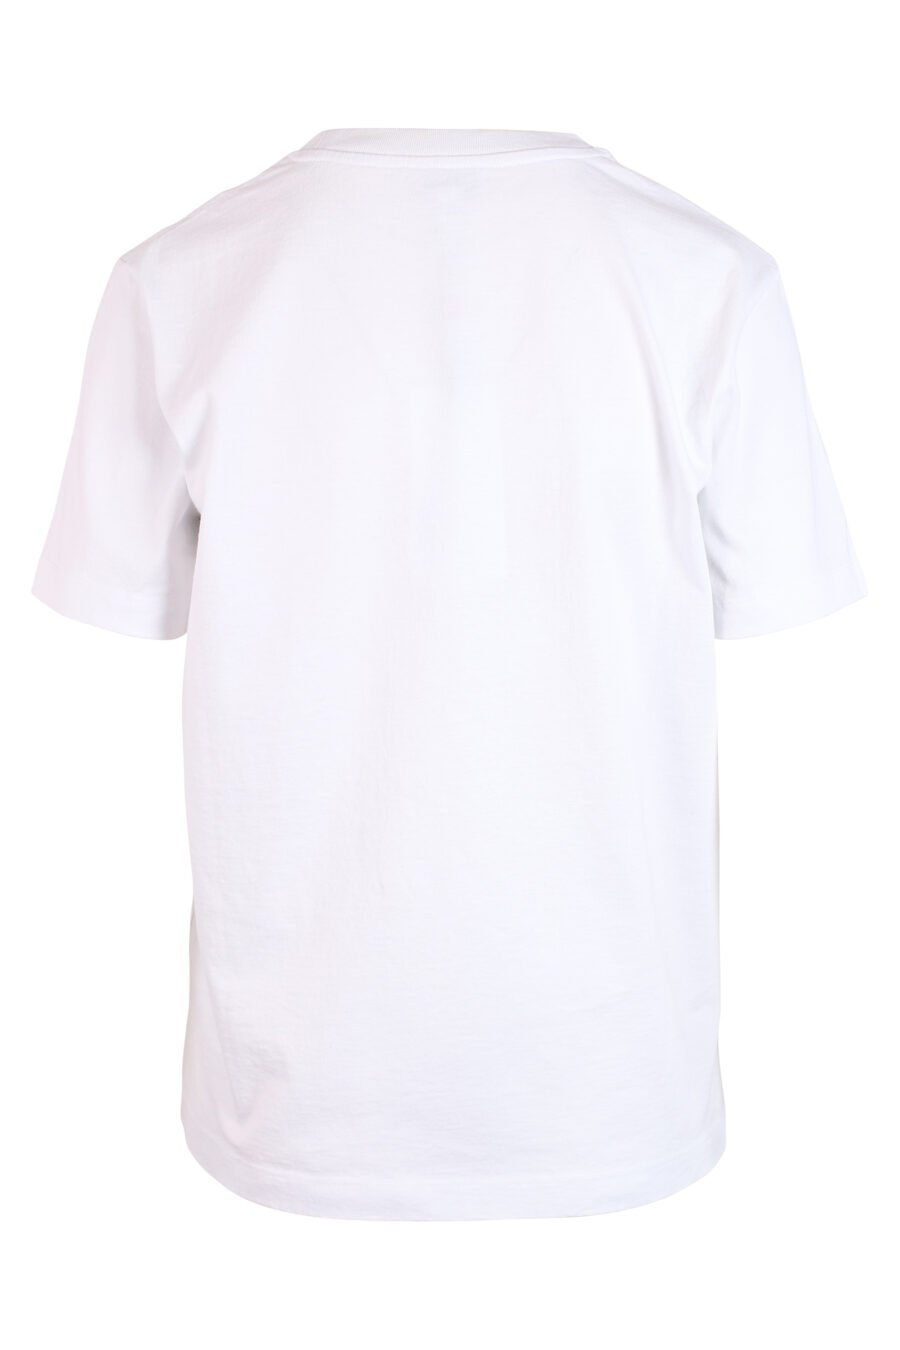 Camiseta blanca con maxilogo verde" paris" - IMG 3270